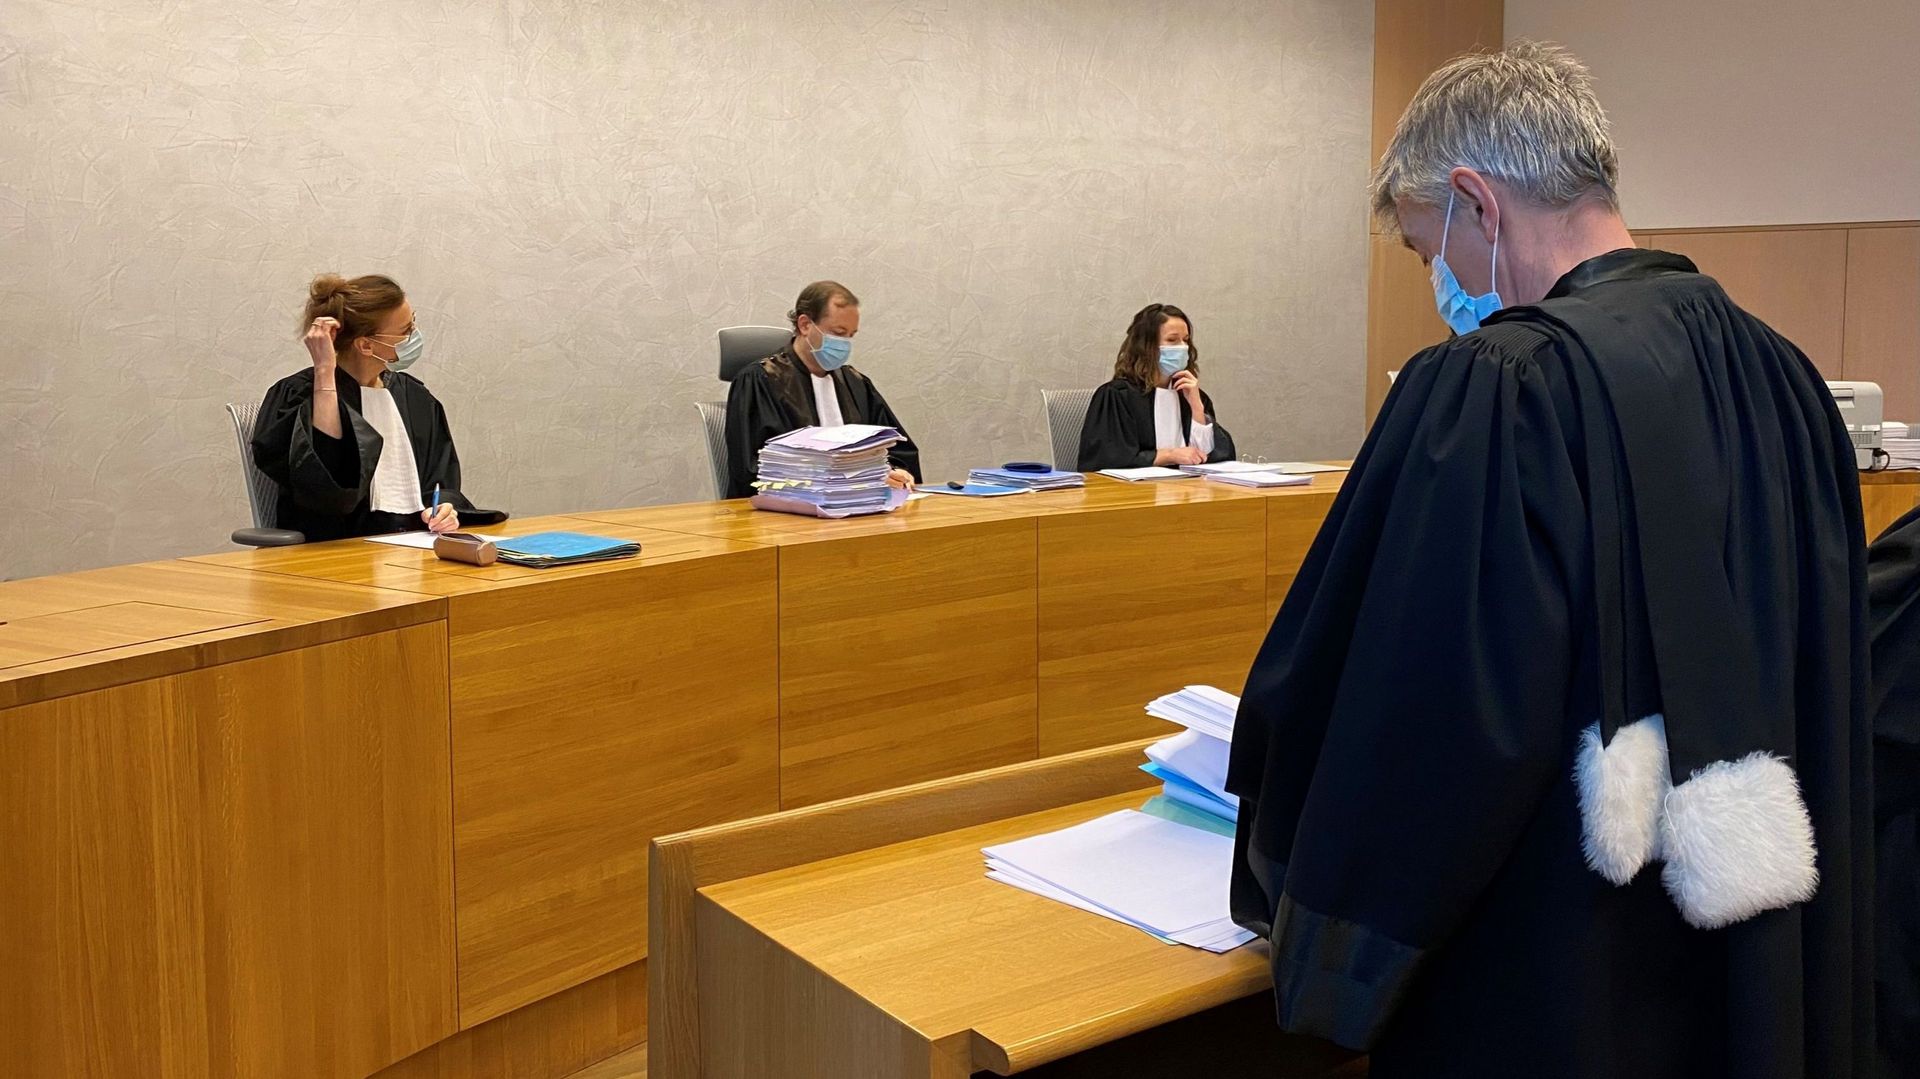 La IVe chambre civile du tribunal de Liège rendra son jugement le dernier mardi de mars